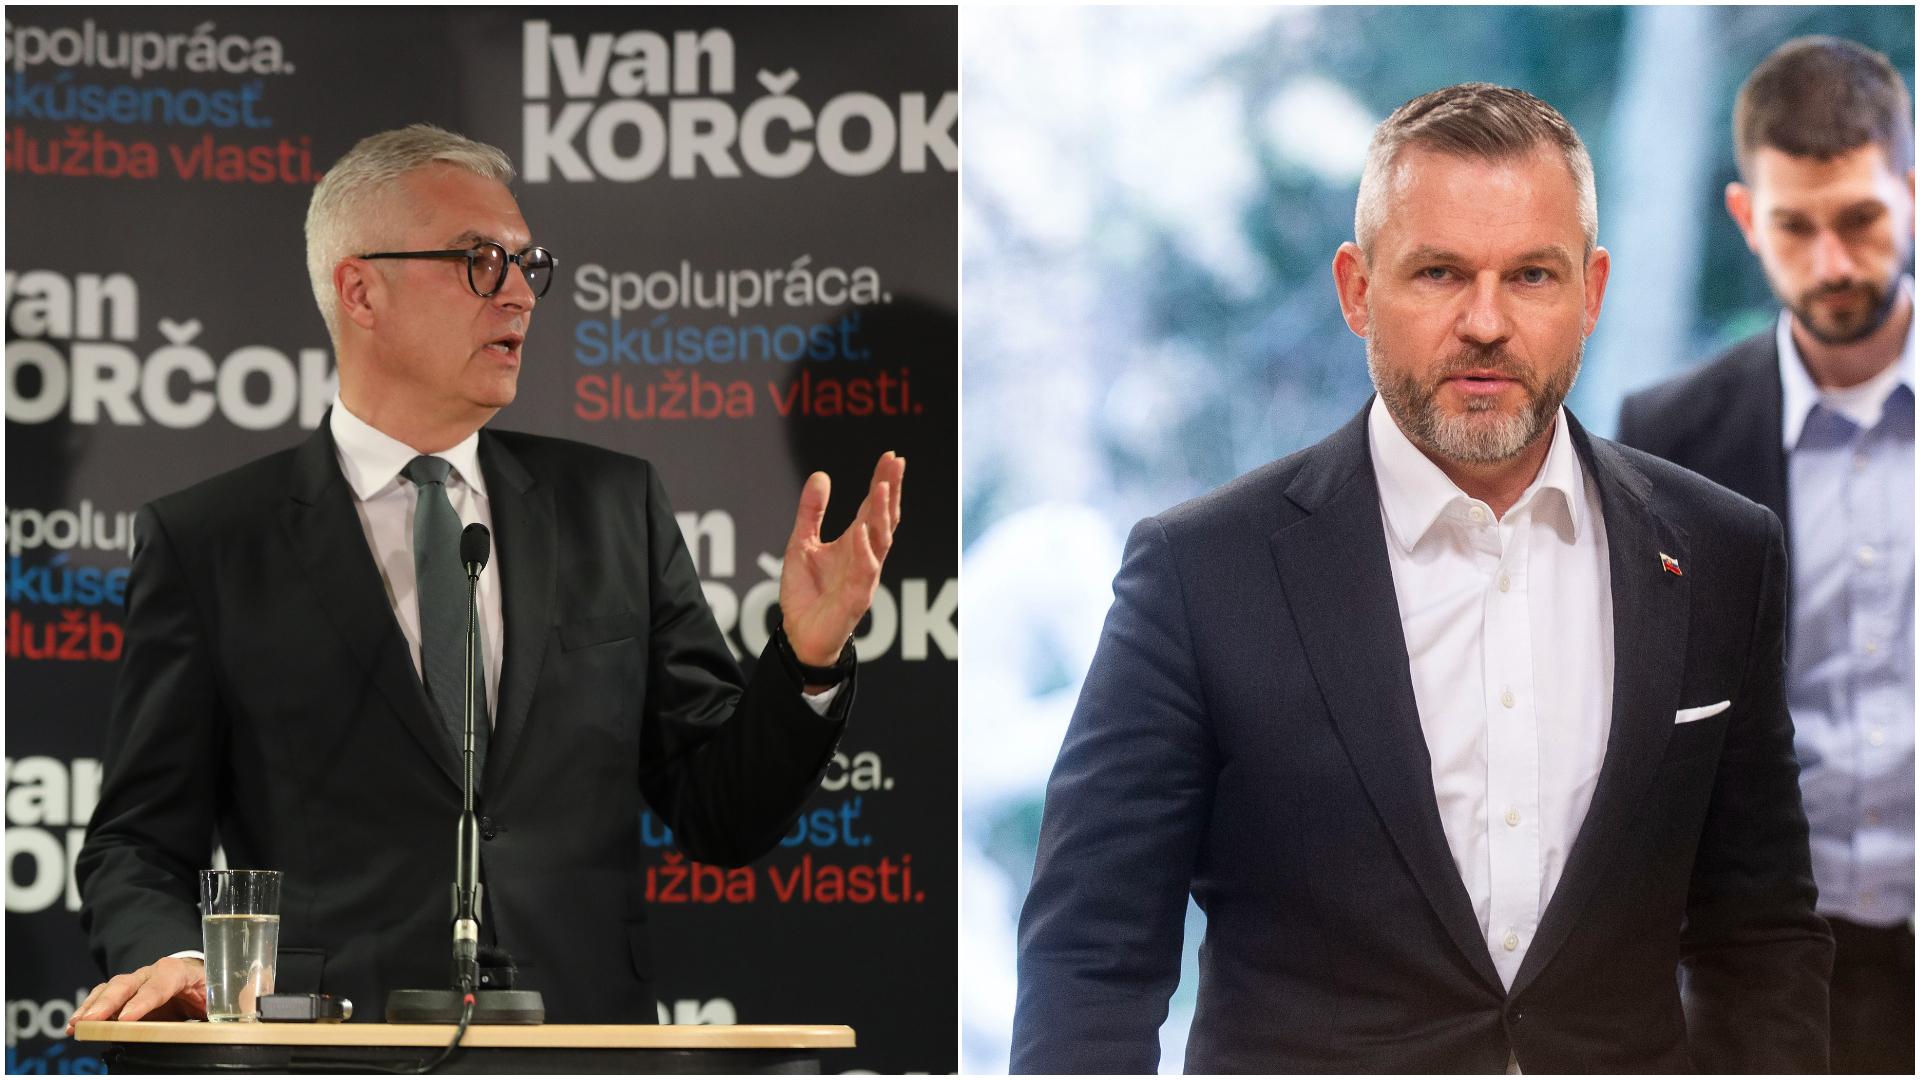 Prezidentské voľby: Korčok vs. Pellegrini, kandidáti diskutujú v druhom dueli